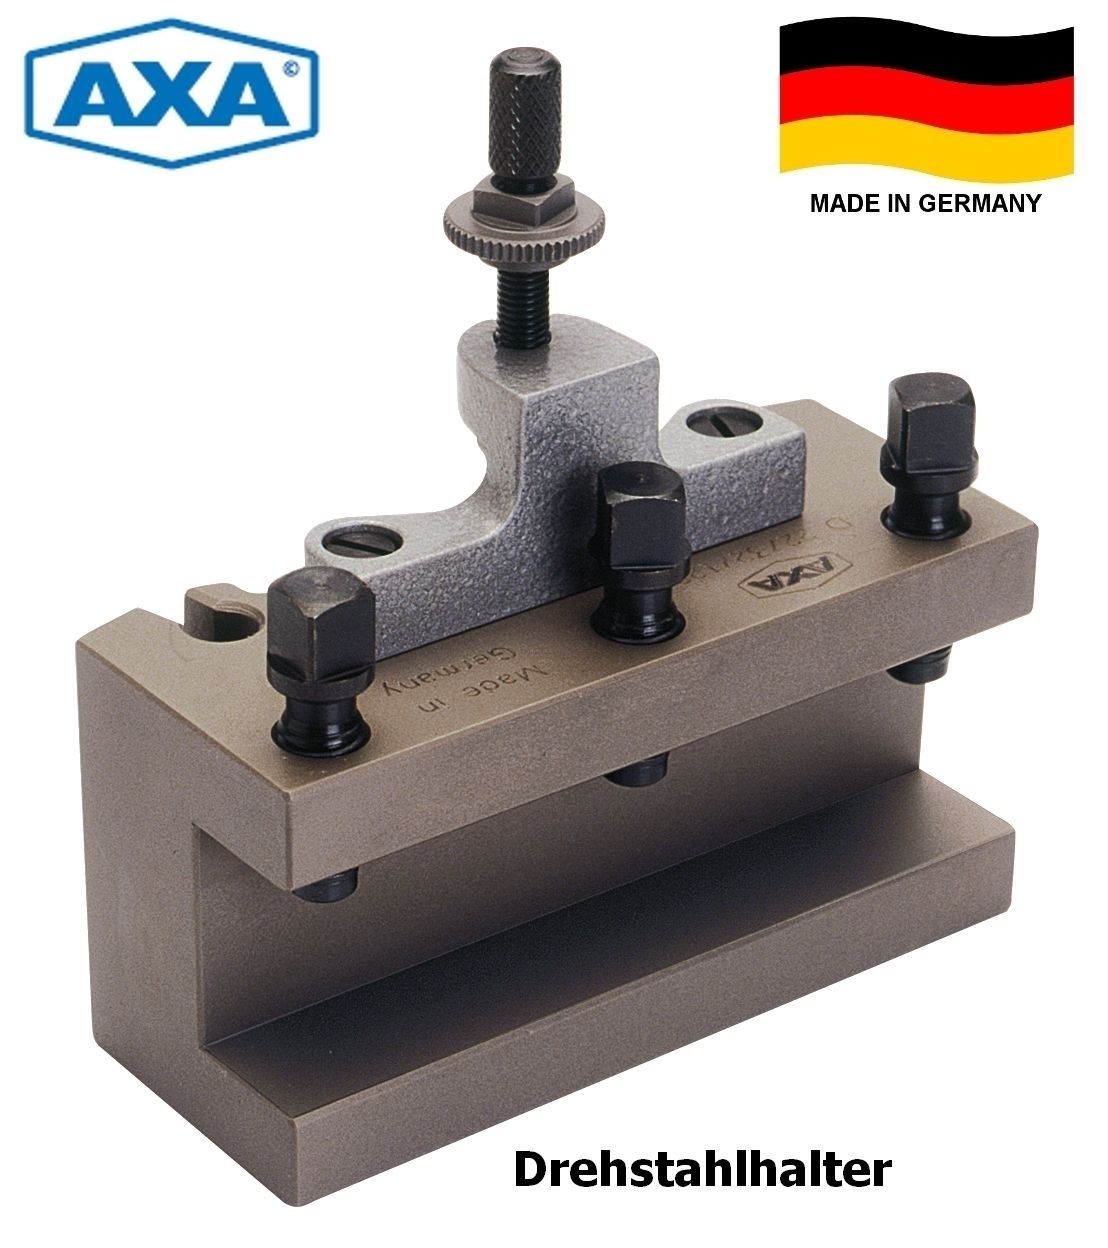 AXA Schnellwechsel-Drehstahlhalter CD 40150 | D33/40/150